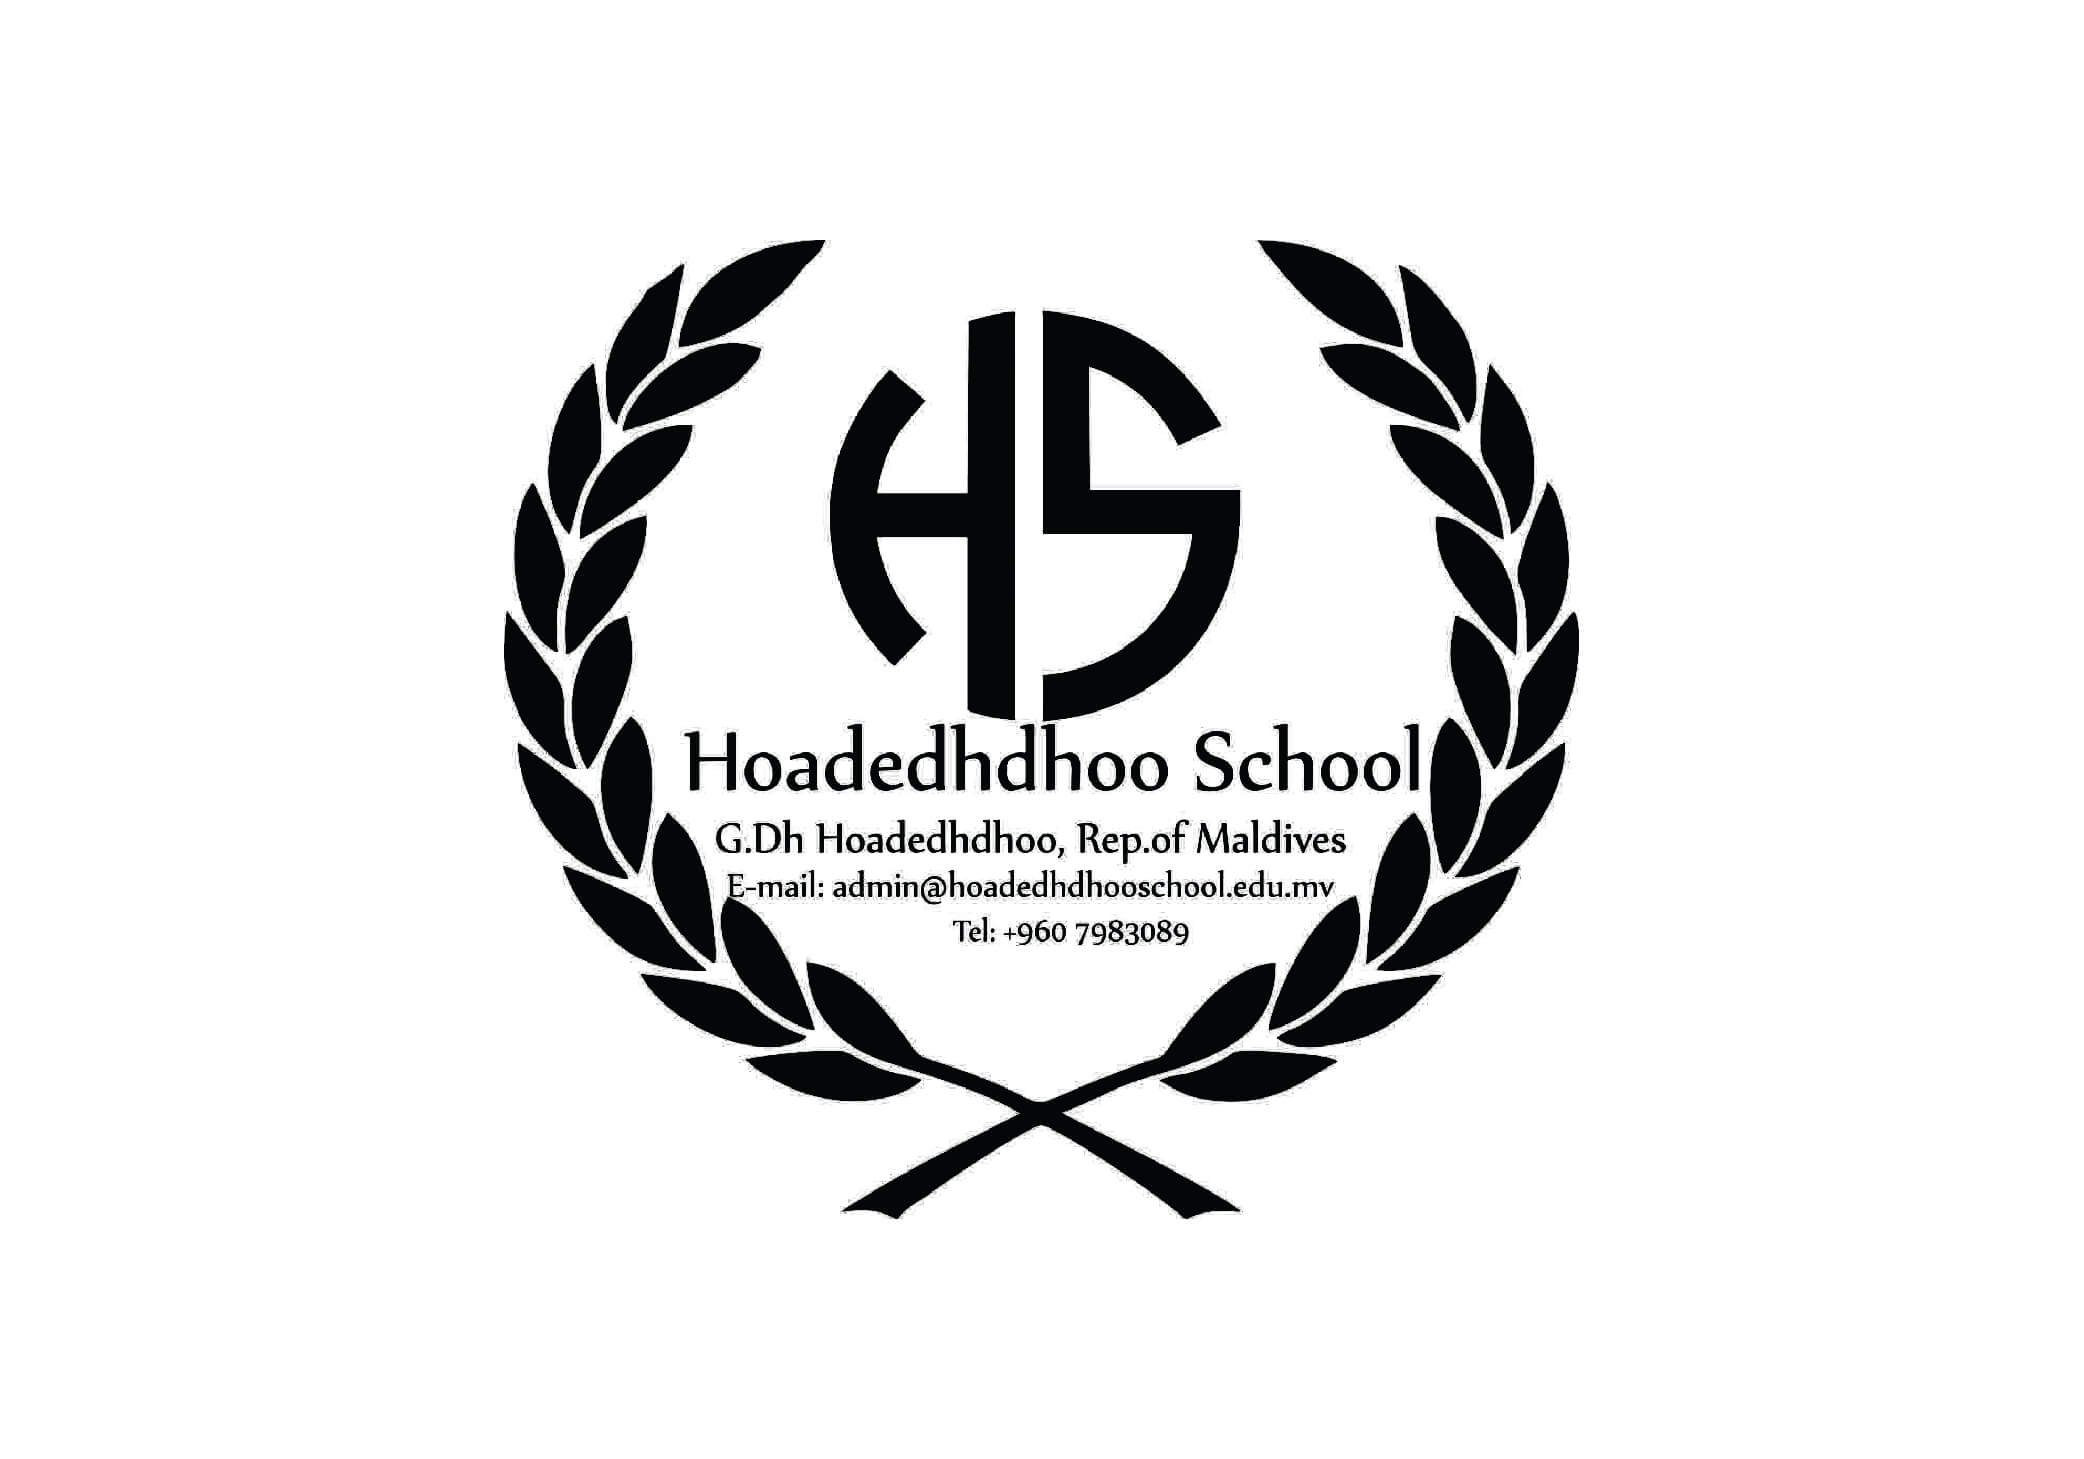 Hoadedhdhoo School